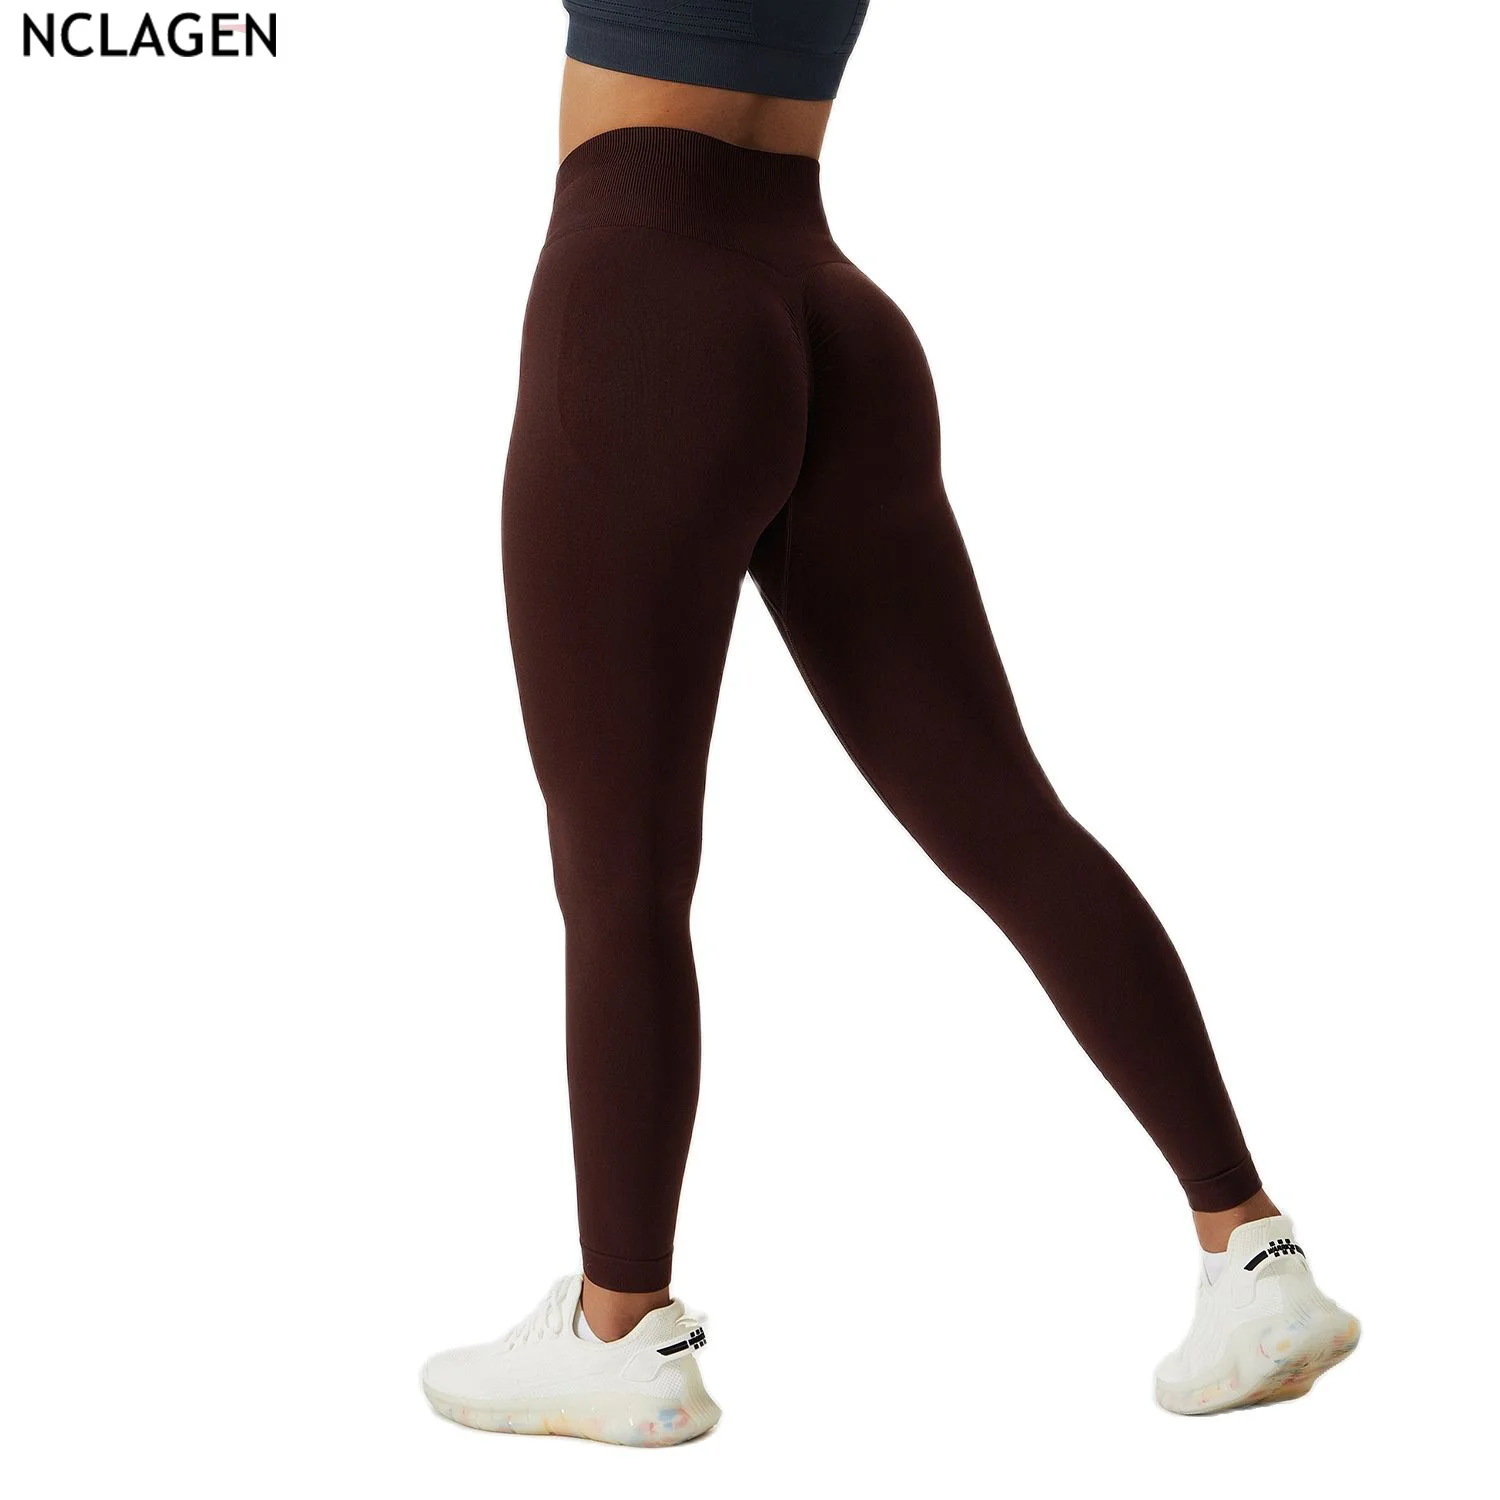 

Леггинсы NCLAGEN женские бесшовные, штаны для йоги, облегающие спортивные трико с высокой талией для бега, подтяжки бедер, фитнеса, тренажерного зала, тренировок